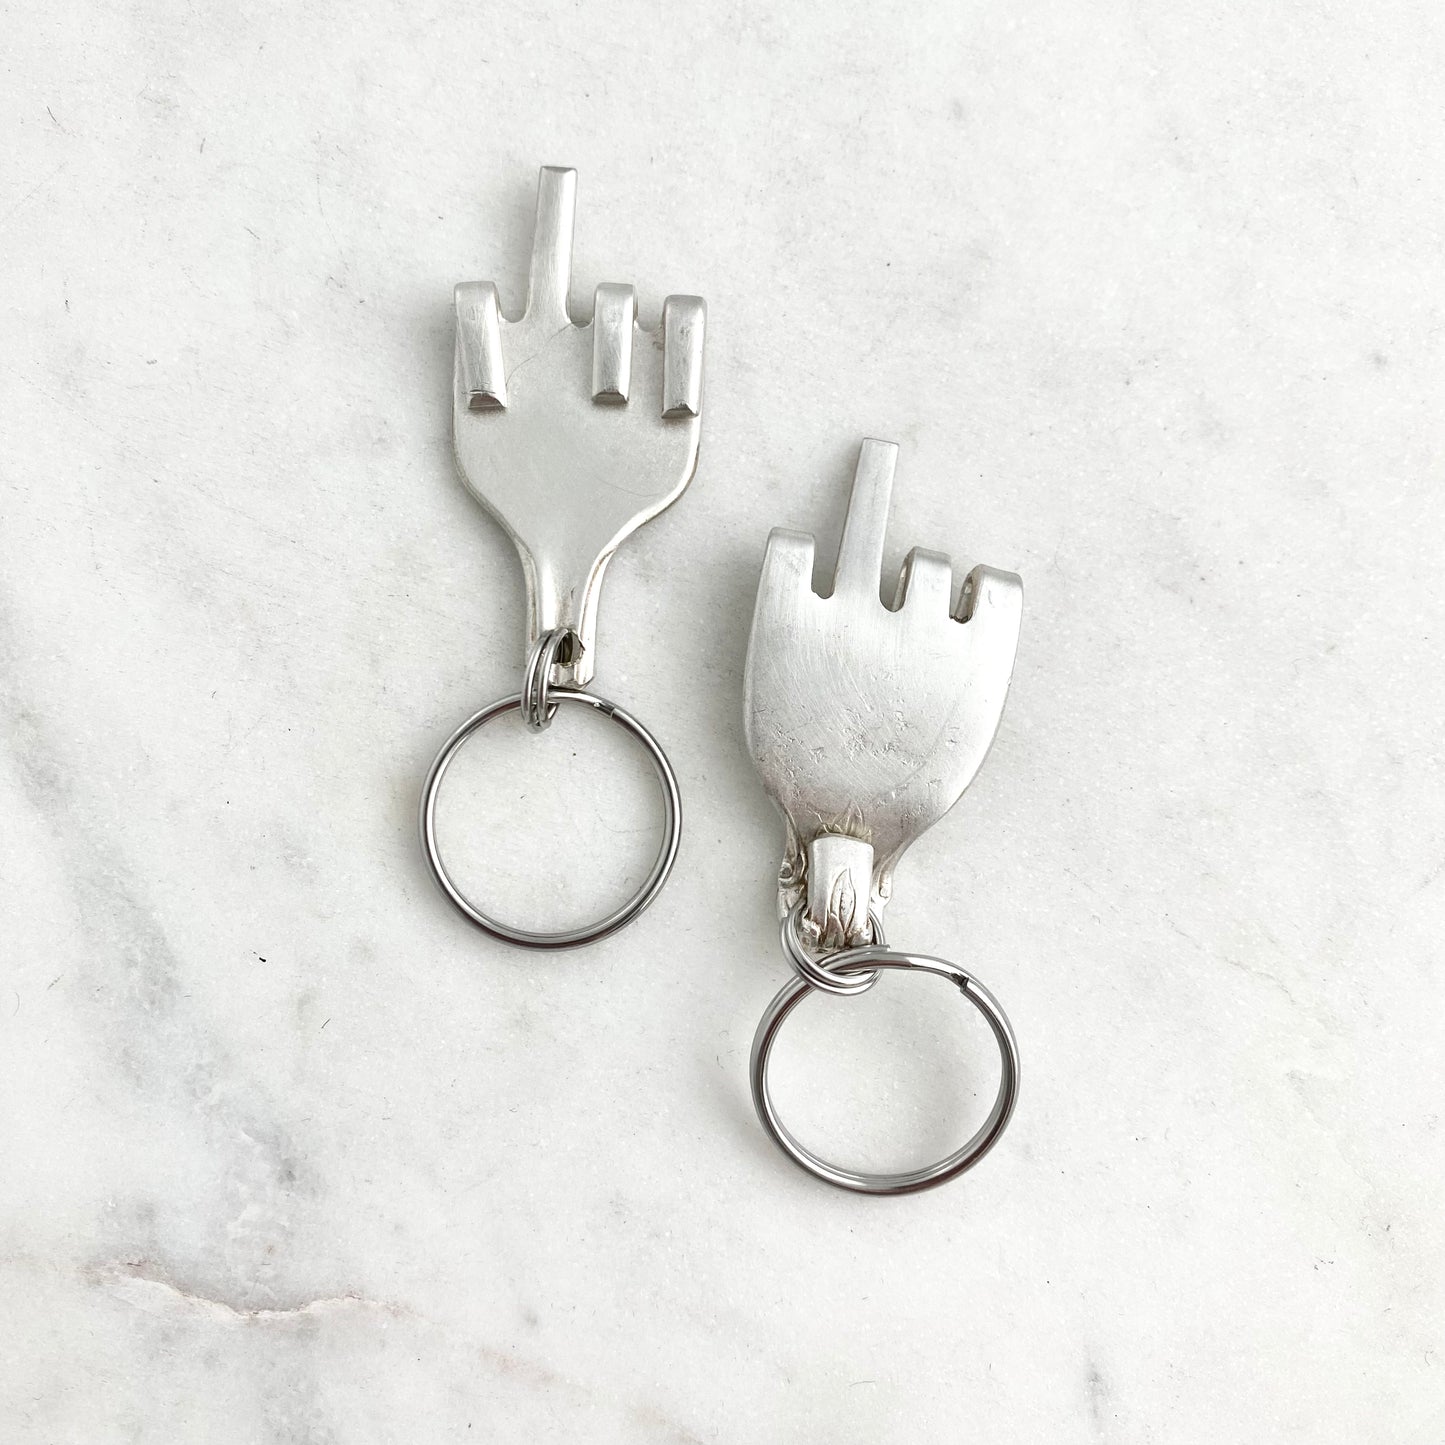 Middle Finger, Fork Mood Keychain, Hand Gesture Keychain, Vintage Silverware Keychain Keychains callistafaye   